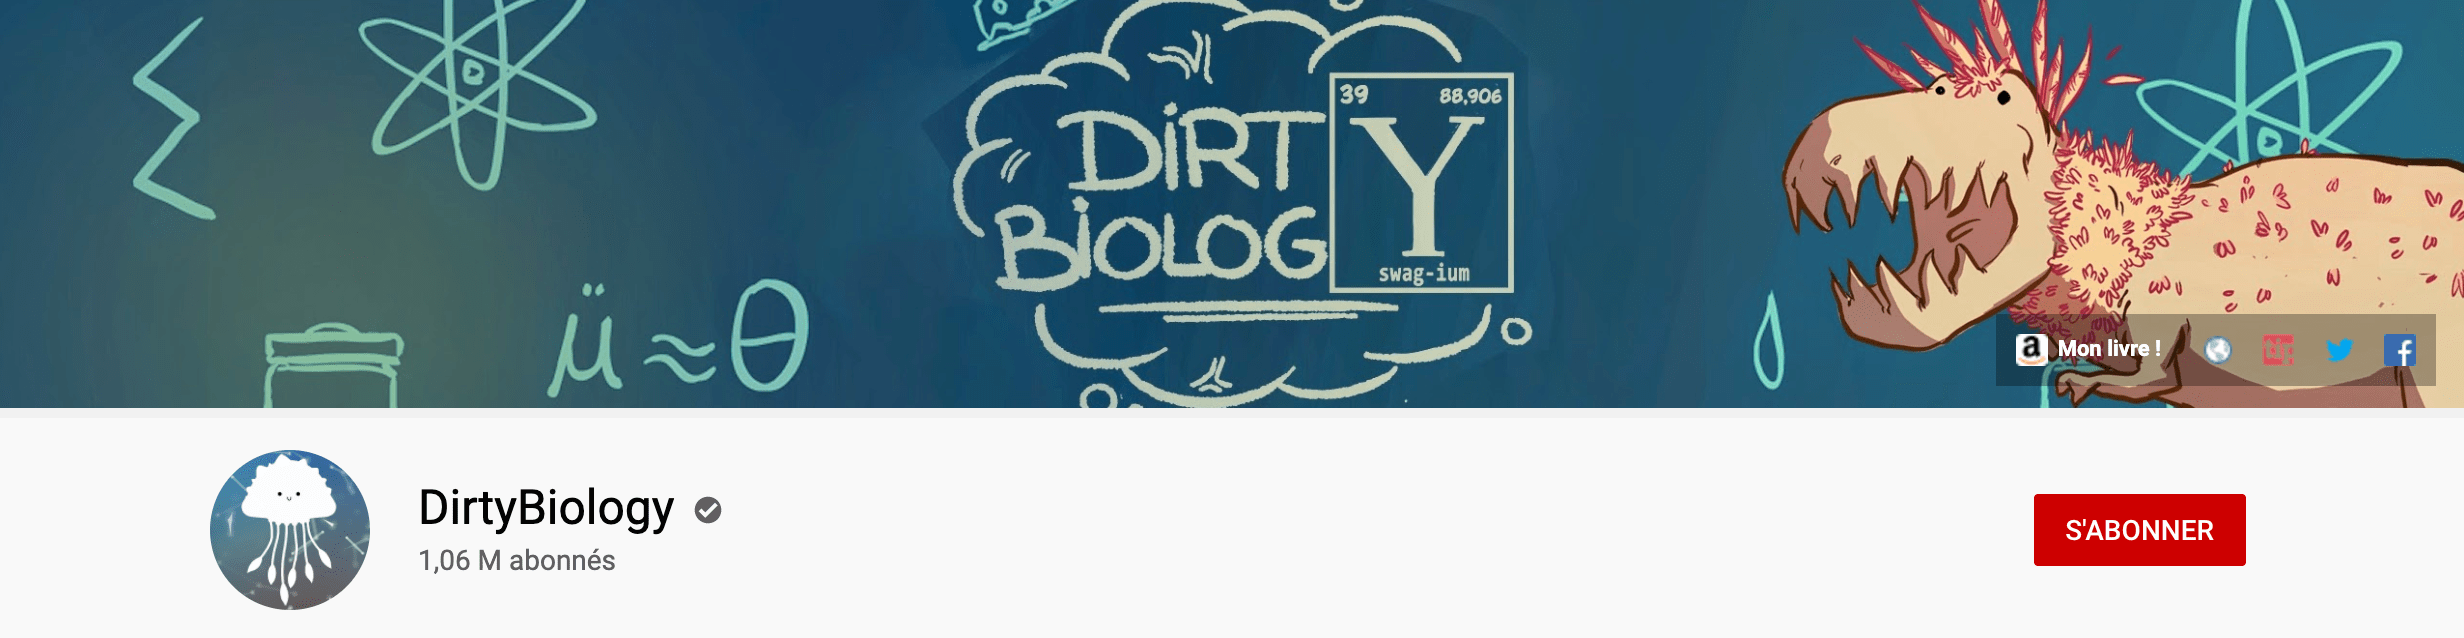 DirtyBiology